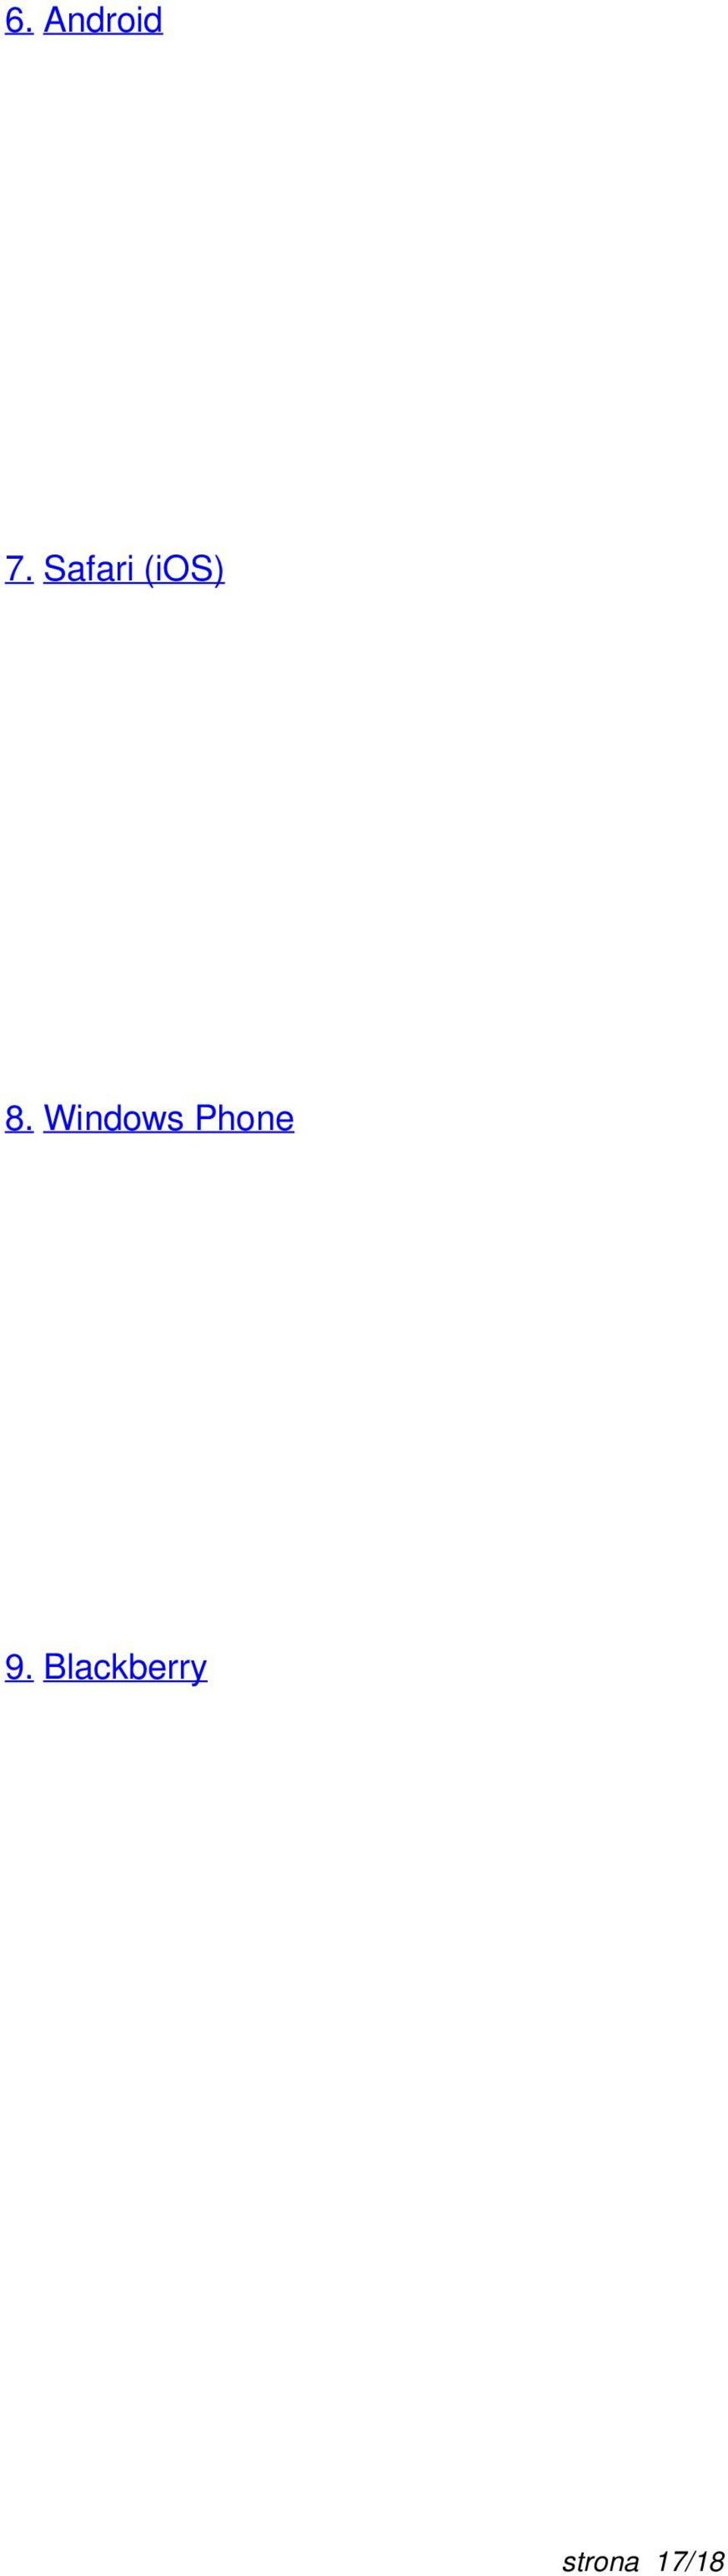 Windows Phone 9.